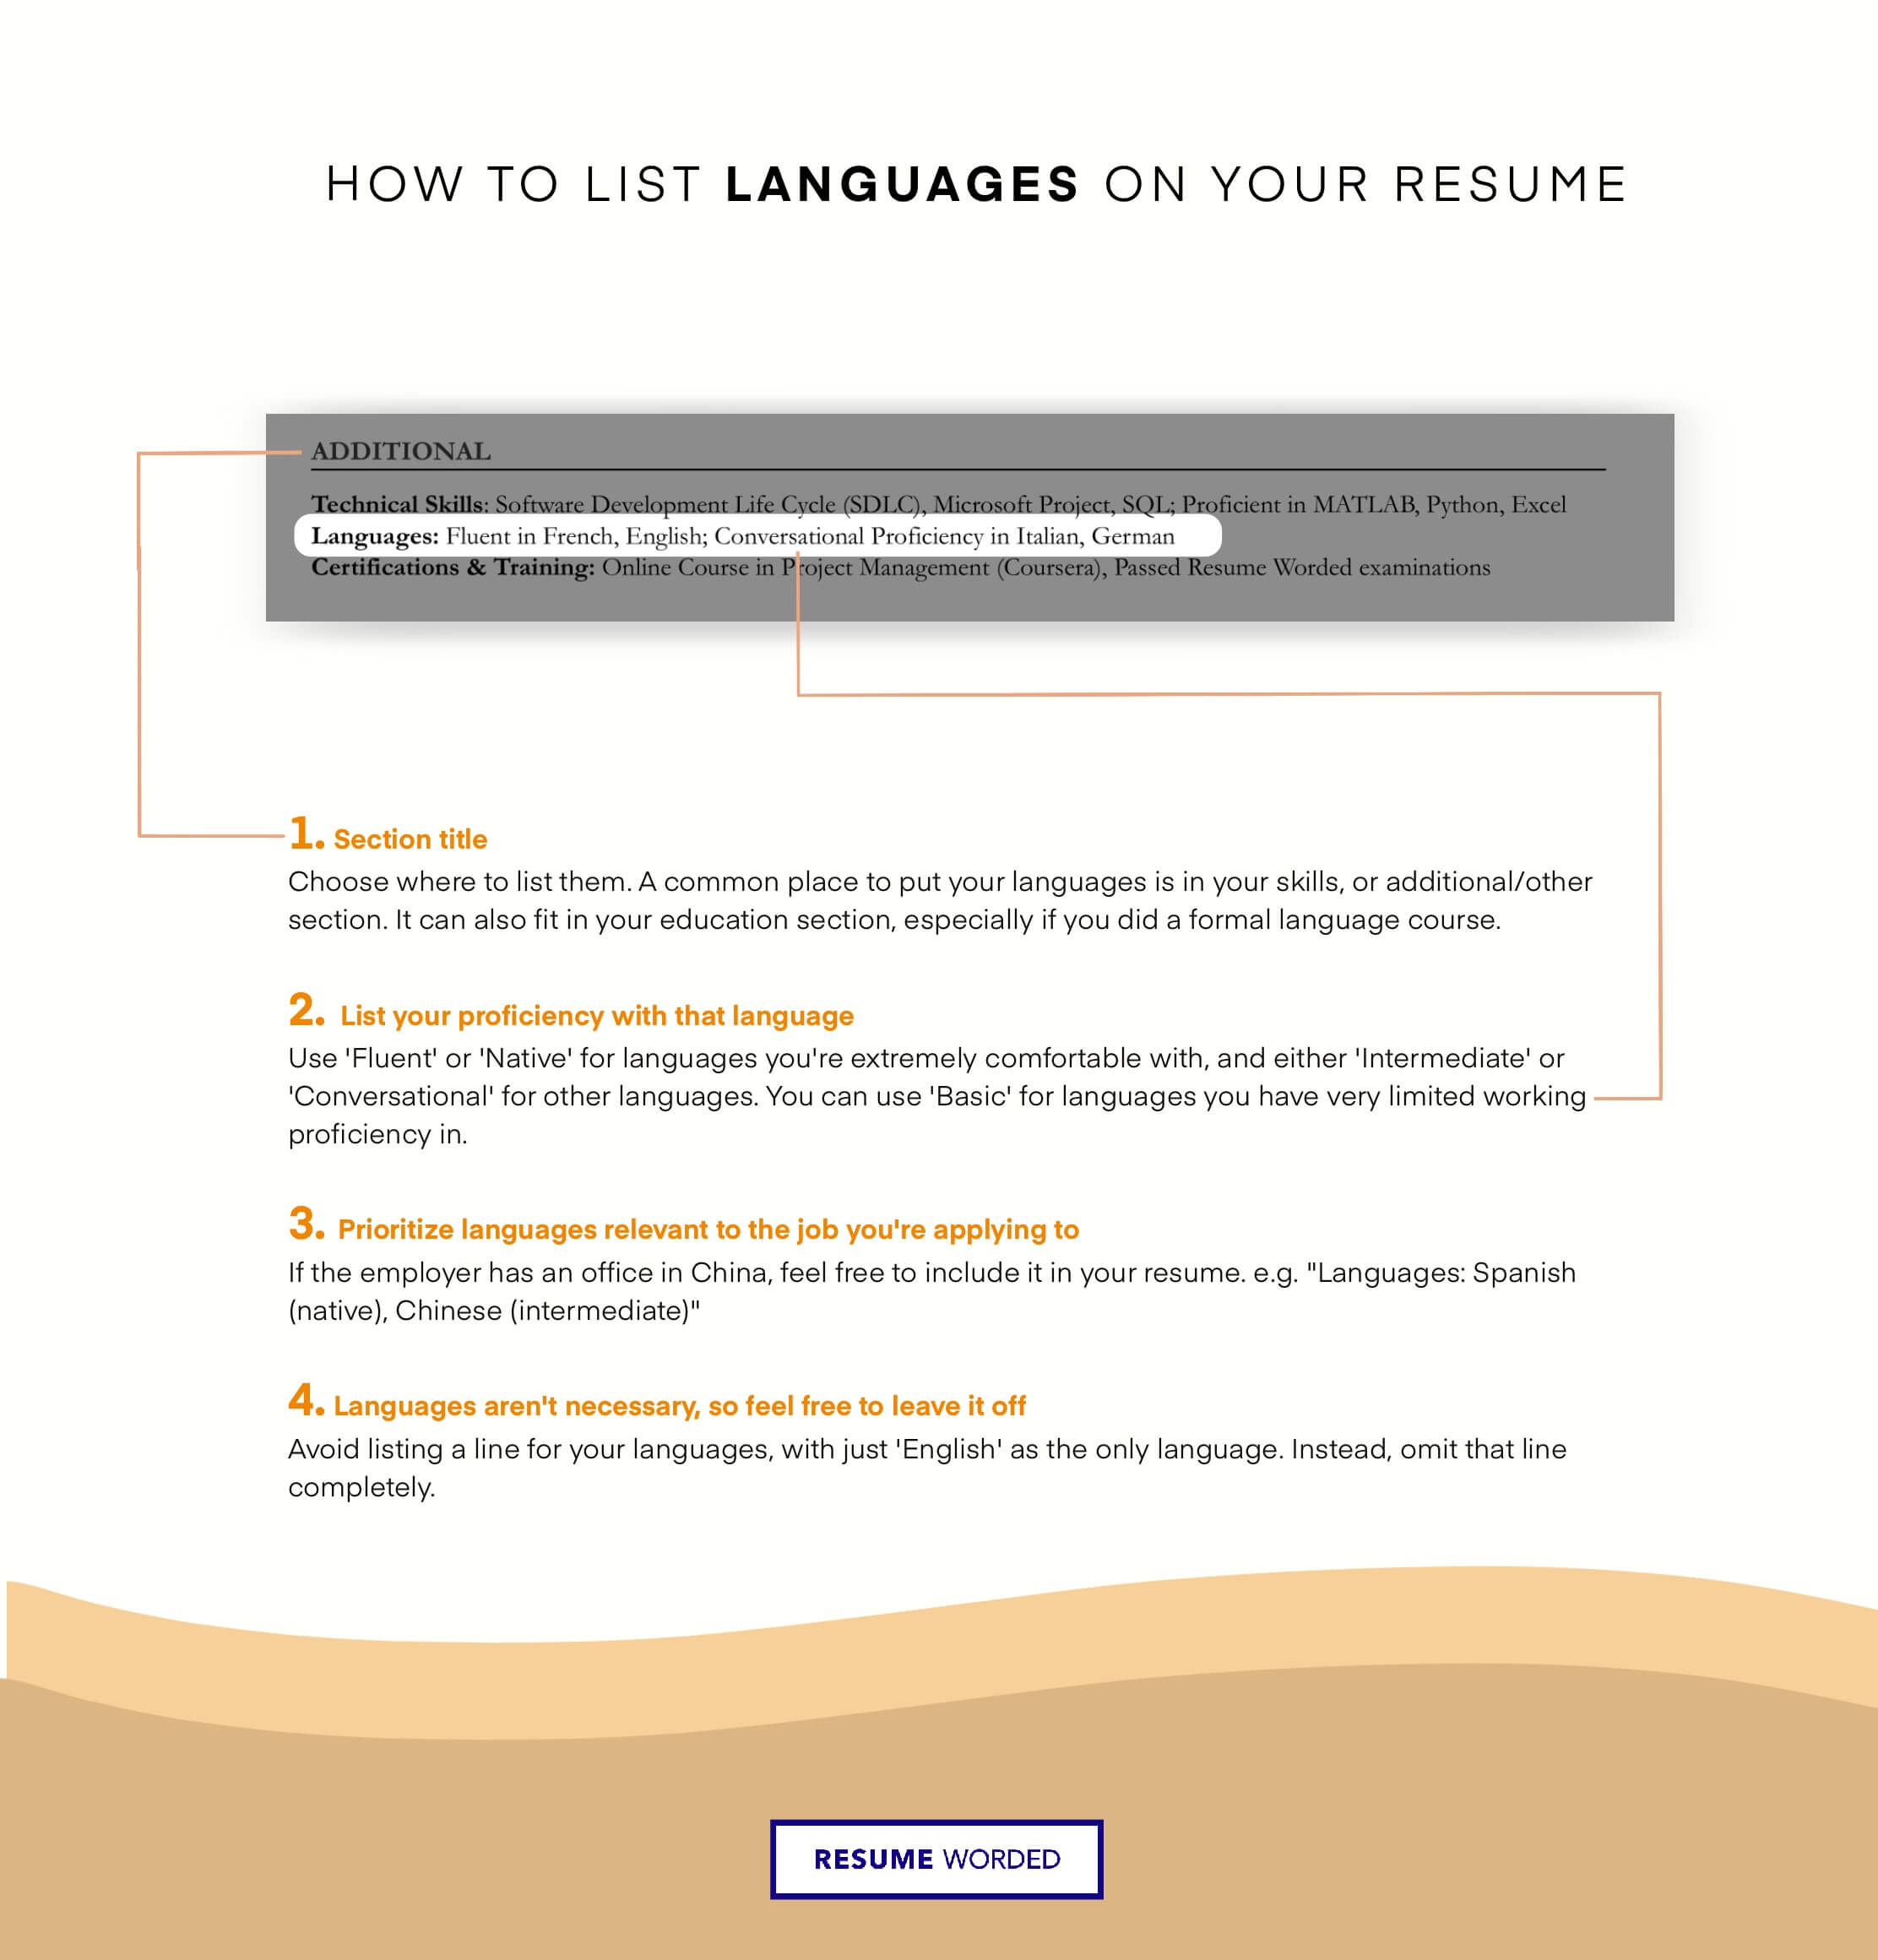 Showcase language and framework mastery - Backend Developer Resume